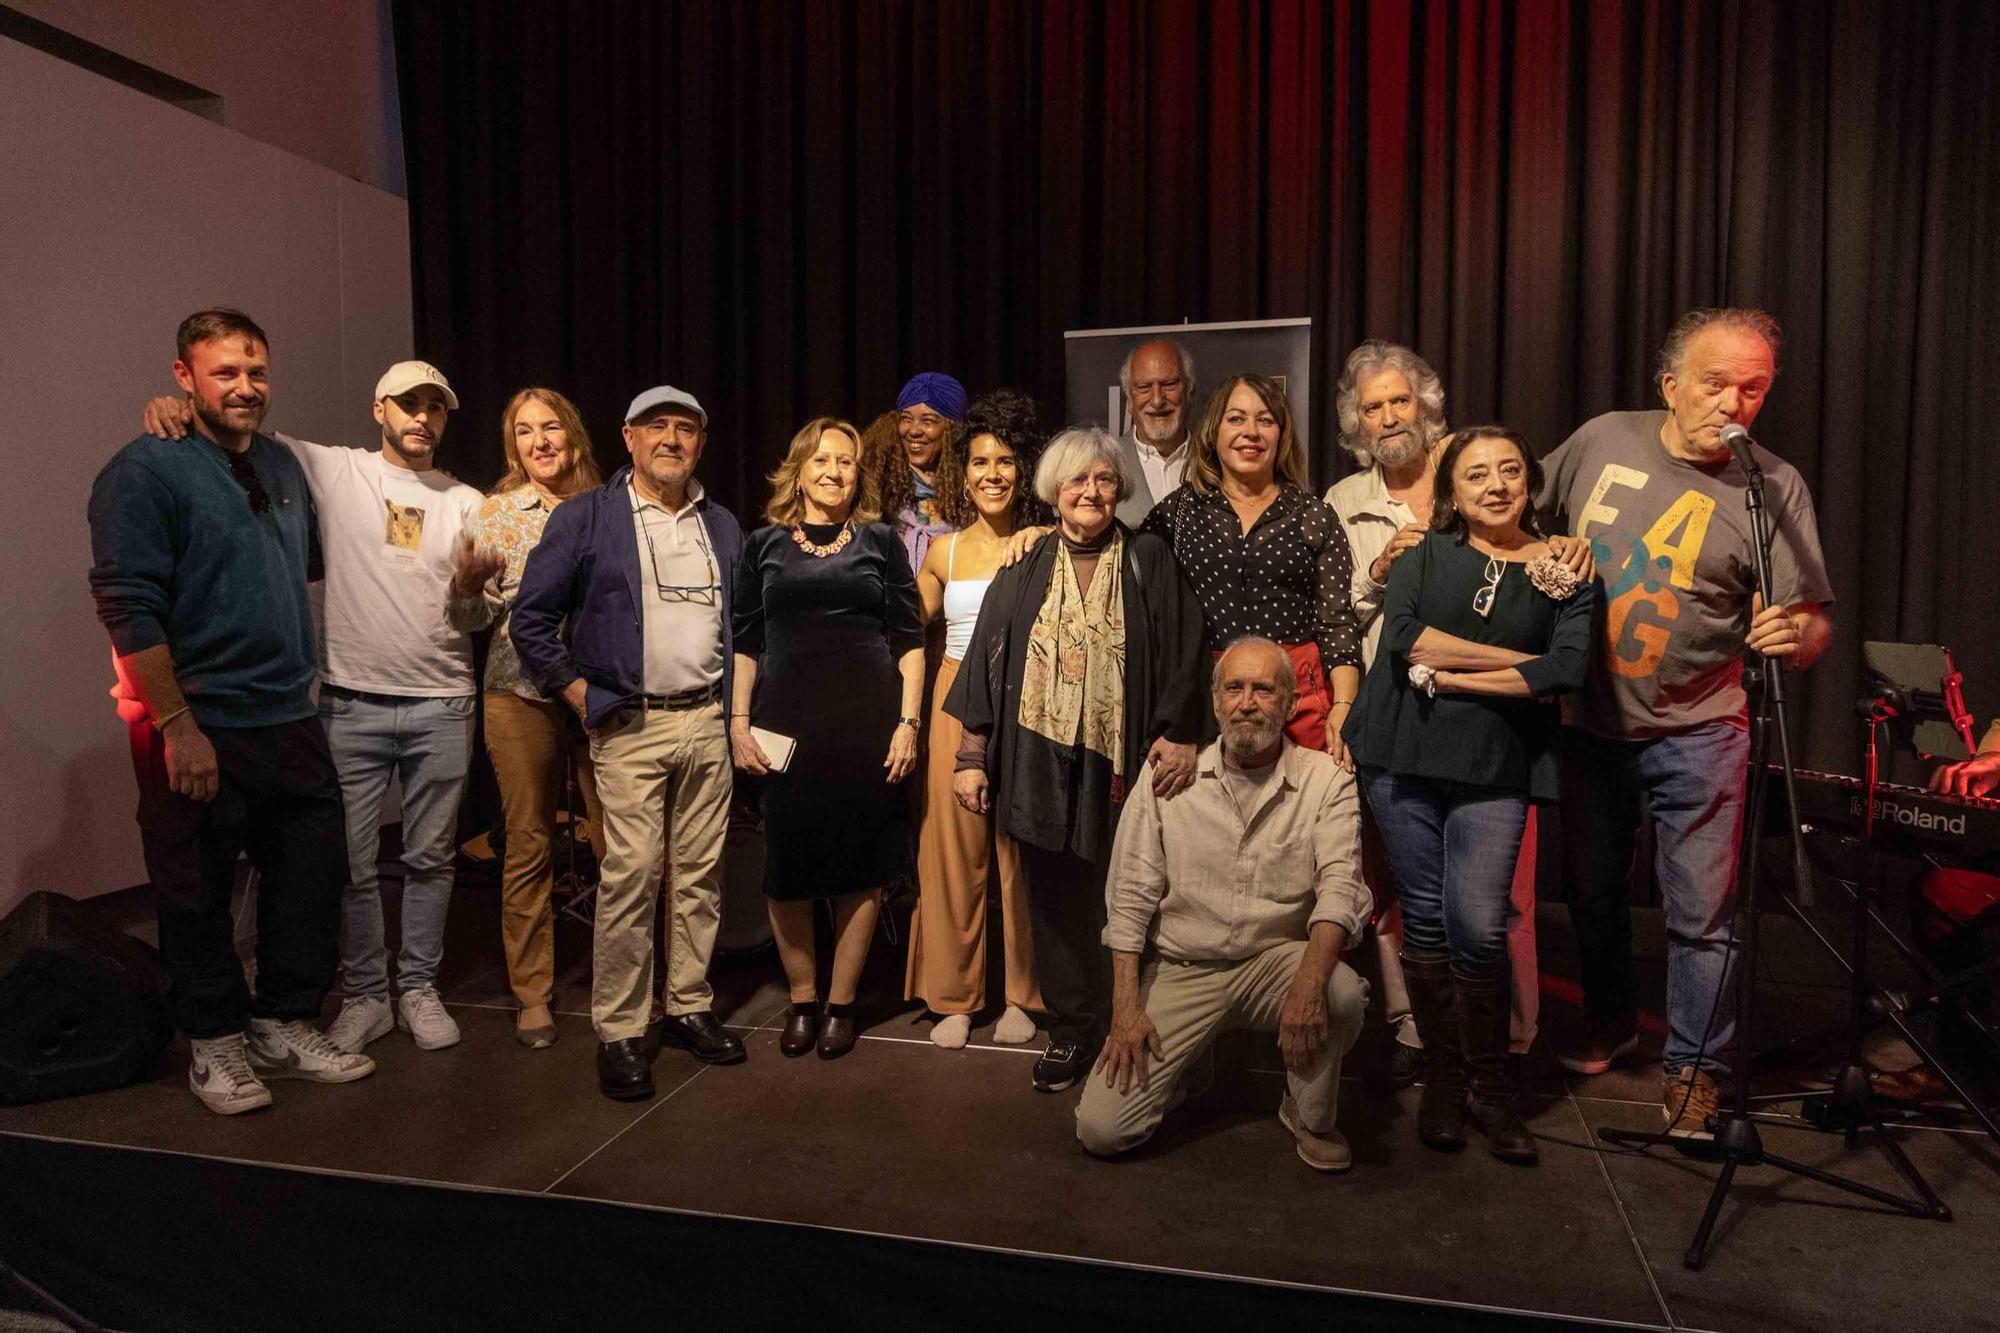 La exposición colectiva de pintura JAZZART y el concierto de JAZZ MEETING QUARTER con CARLA VALLET llena el Centro Municipal de las Artes y anuncia el inicio del Día Internacional del Jazz en Alicante